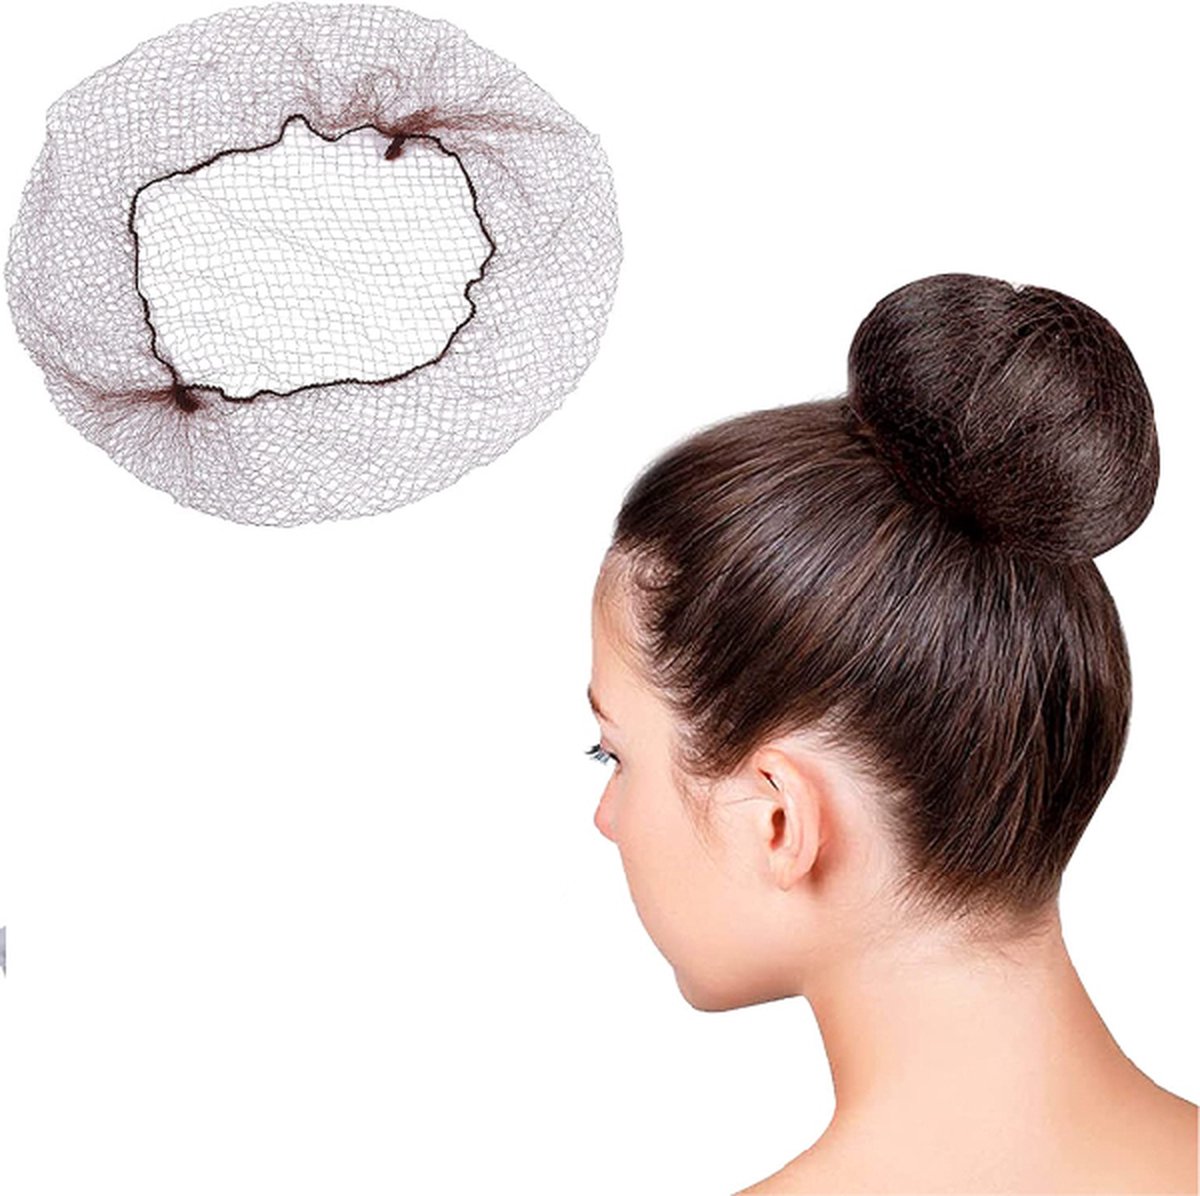 50 stuks haarnetjes onzichtbaar elastisch rand mesh 22 inch donker bruine nylon onzichtbaar haarnet voor vrouwen, meisjes, haarknoopjes maken